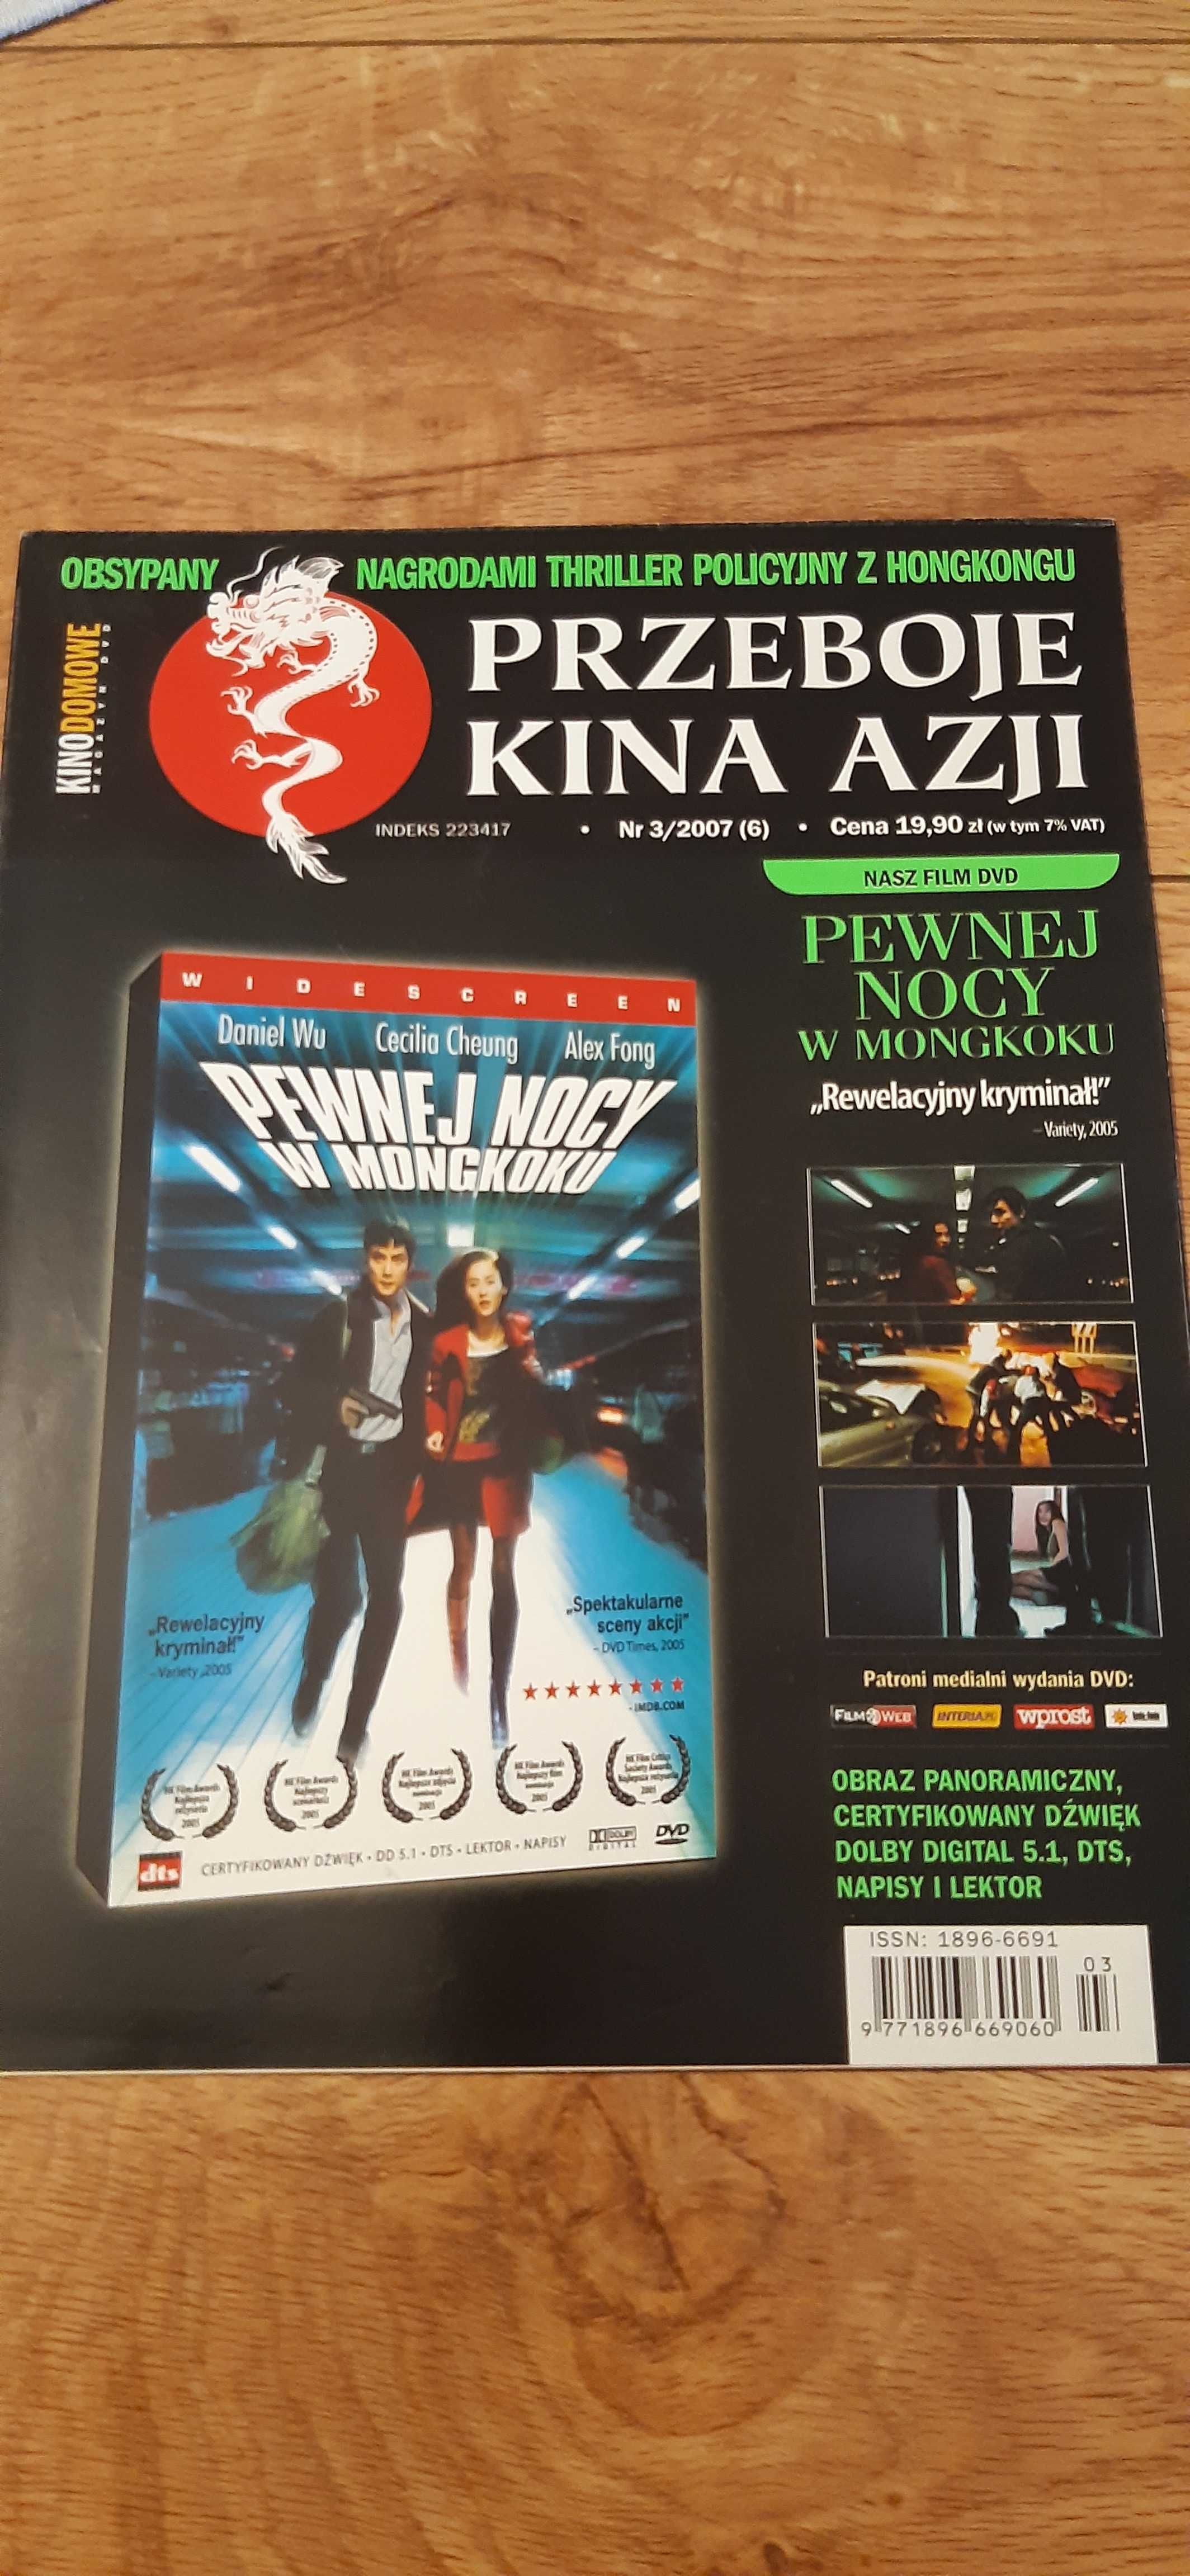 plakat z filmu pewnej nocy w mangkoku kino azja